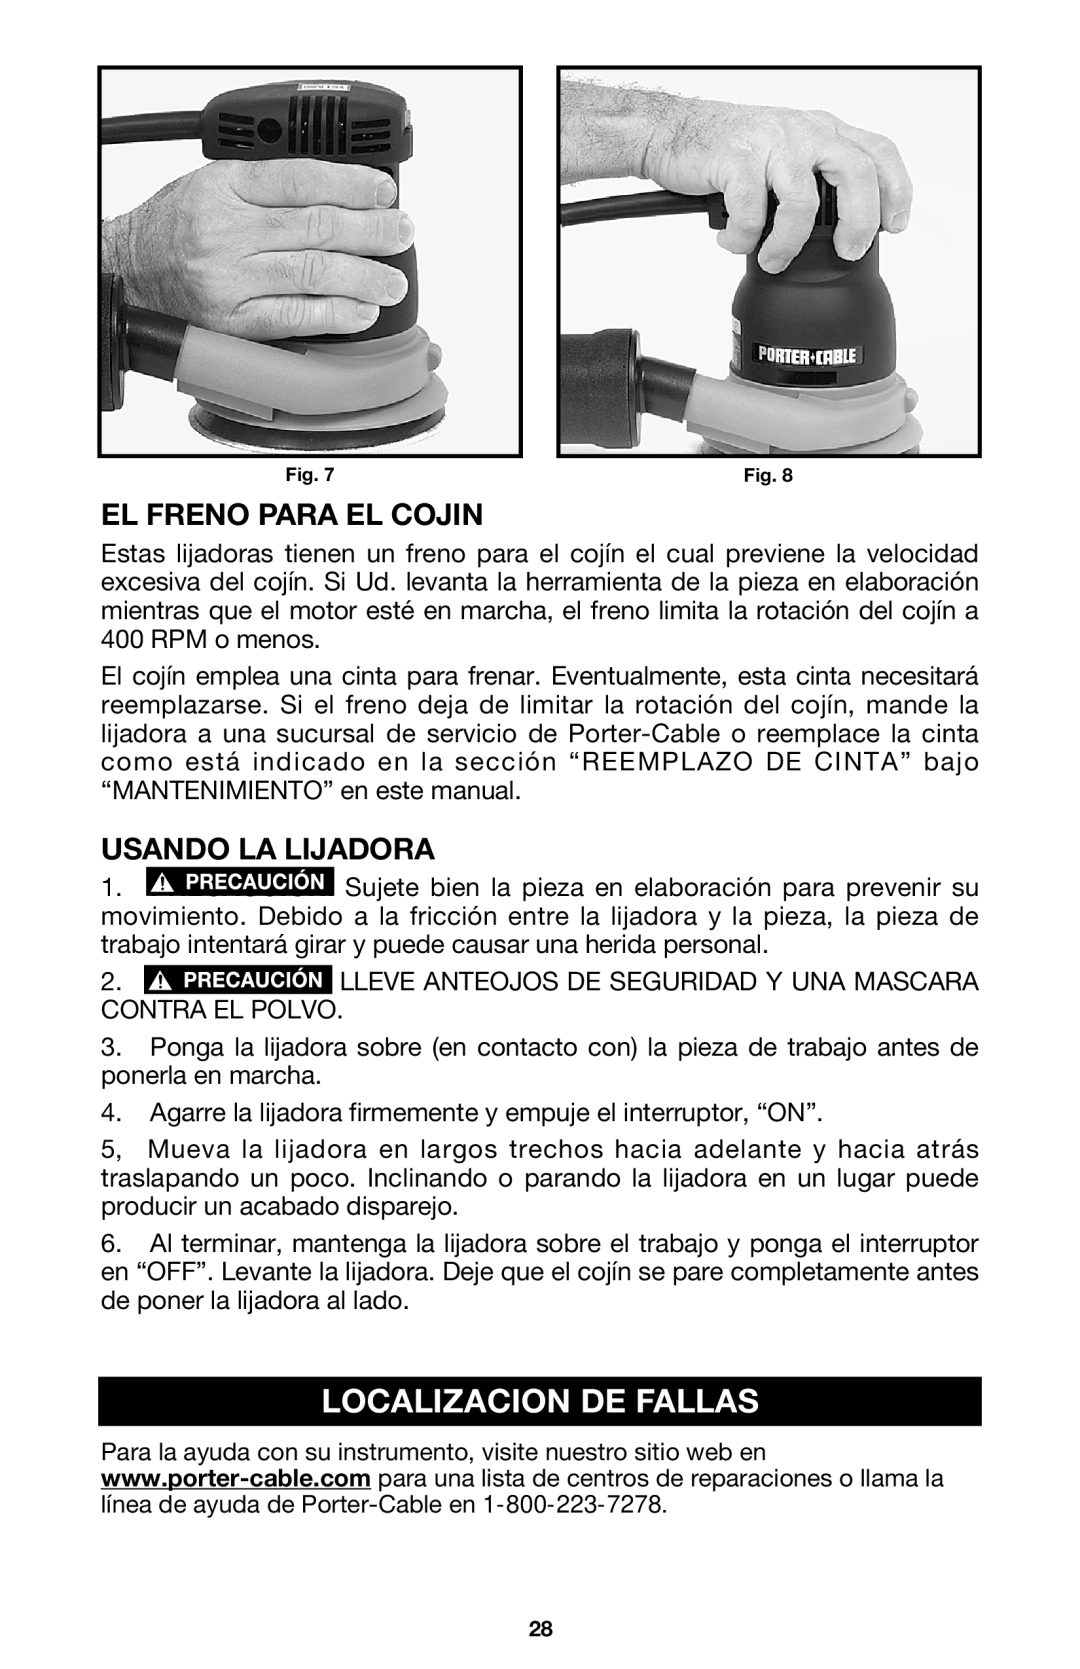 Porter-Cable 333VS instruction manual Localizacion De Fallas, El Freno Para El Cojin, Usando La Lijadora 